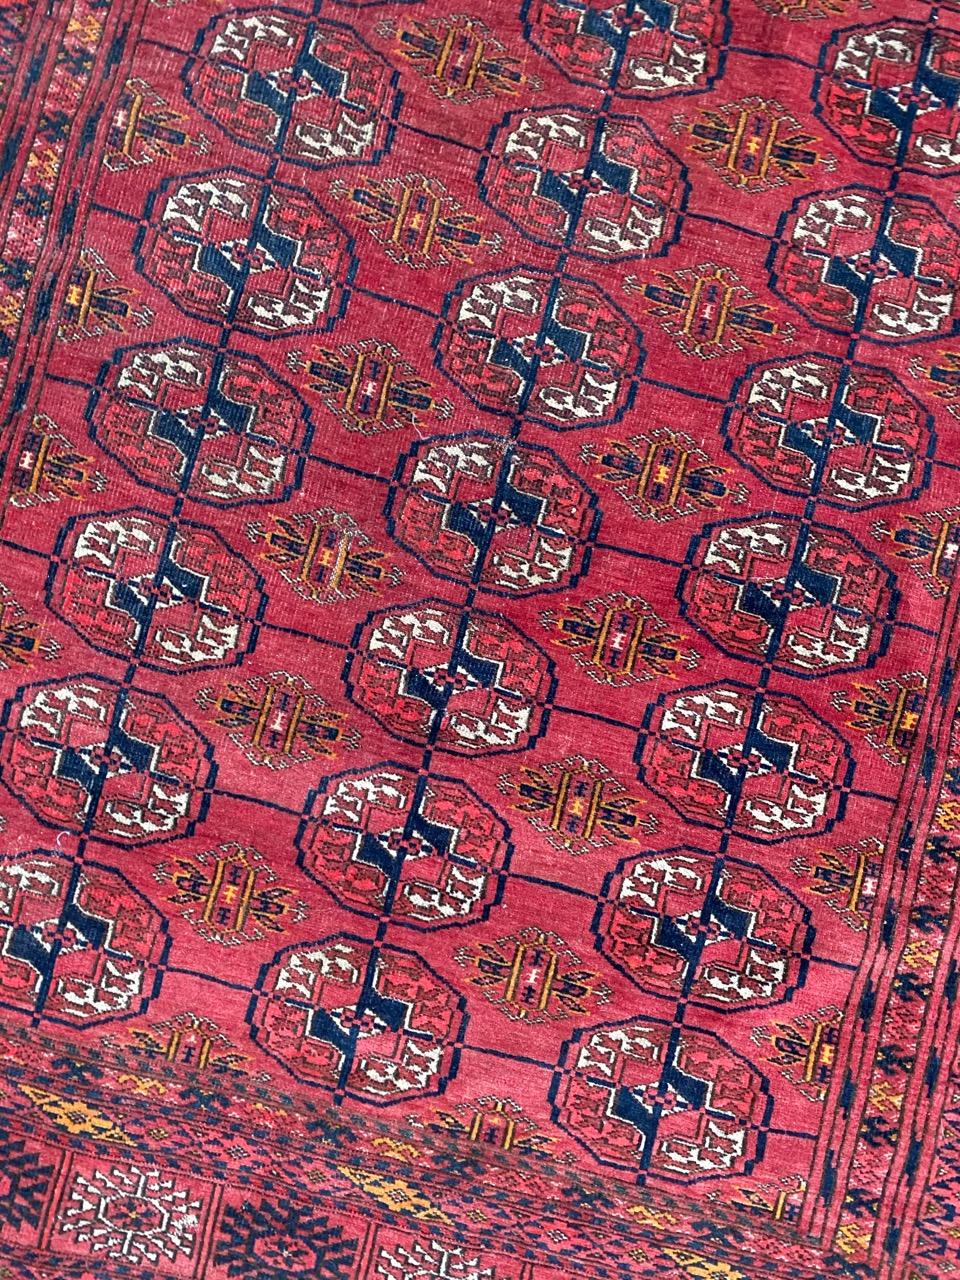 Exquisiter Bokhara-Teppich aus dem späten 19. Jahrhundert mit einem atemberaubenden geometrischen Muster von Bokhara Guls. Dieses Meisterwerk besticht durch natürliche Farben, ein sattes rotes Feld und aufwendige handgeknüpfte Kunstfertigkeit. Das